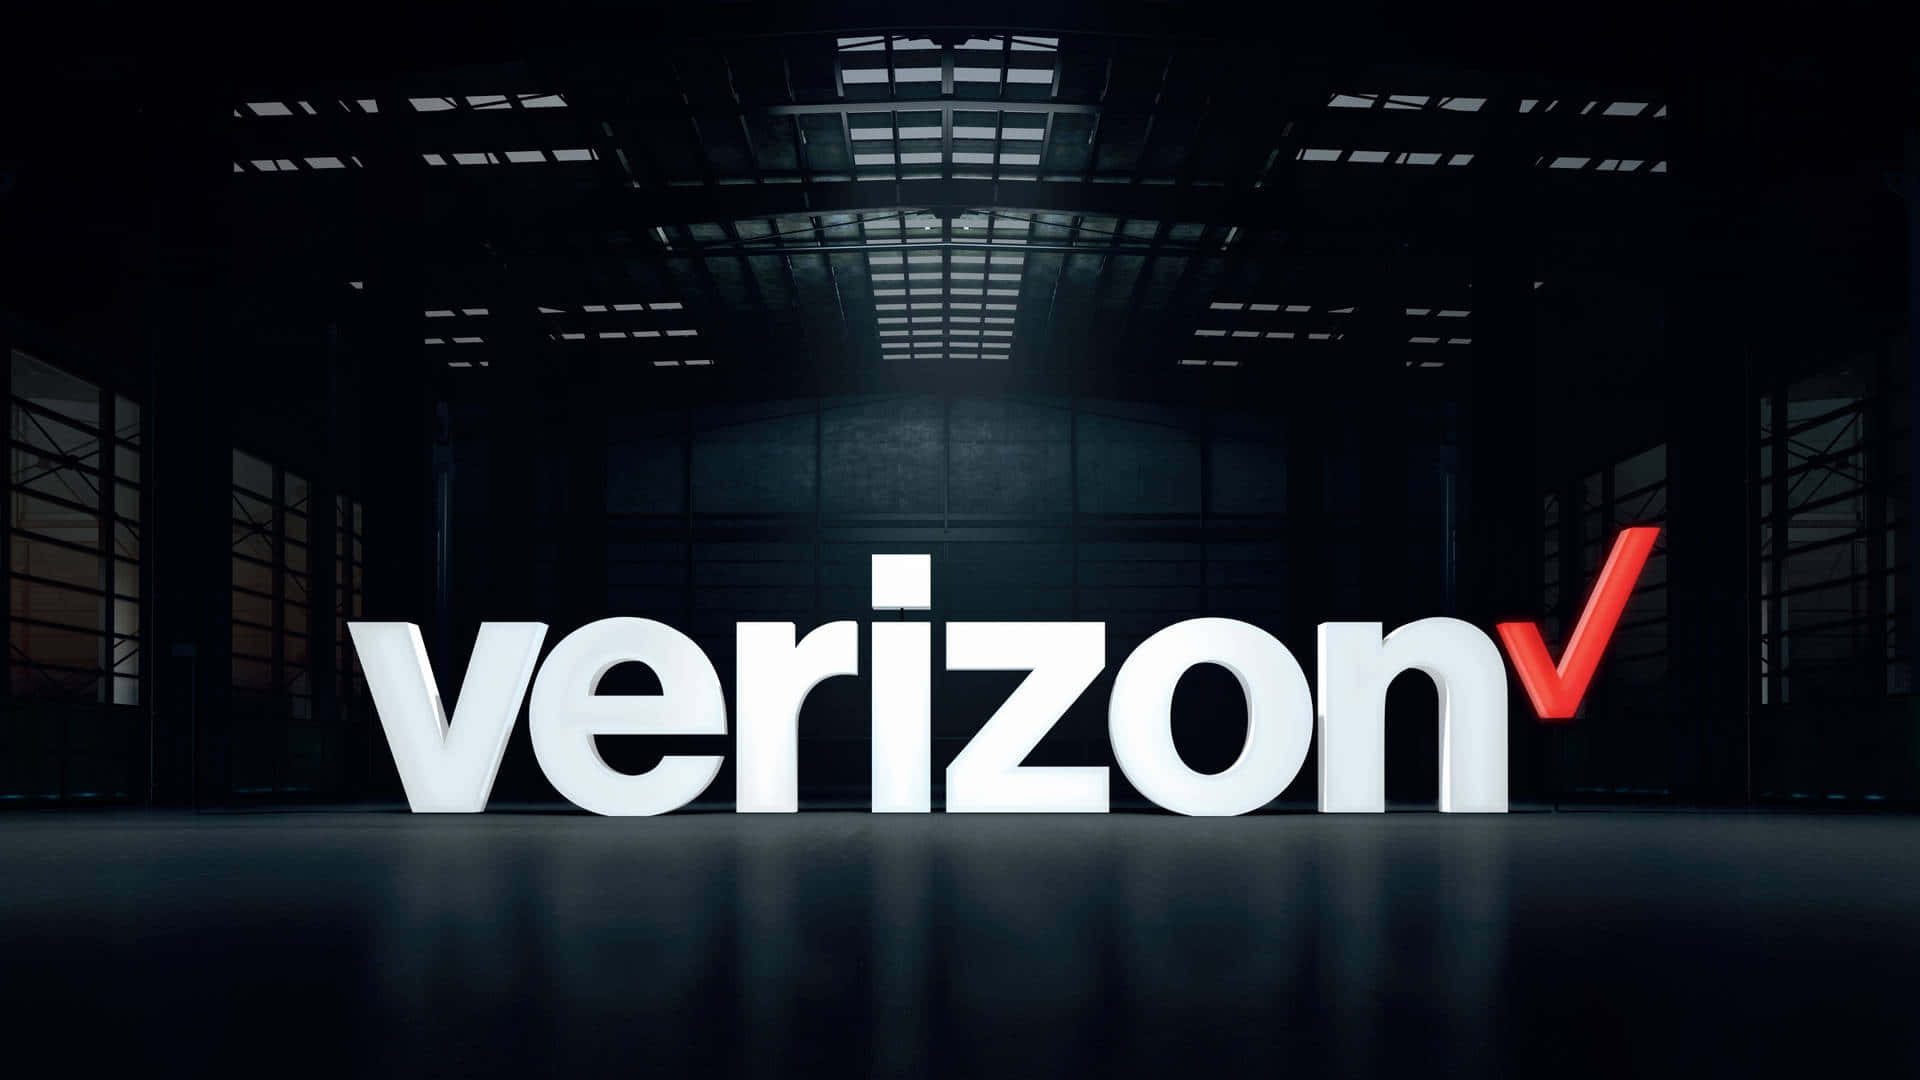 Verizonsv-logo I Et Mørkt Lager